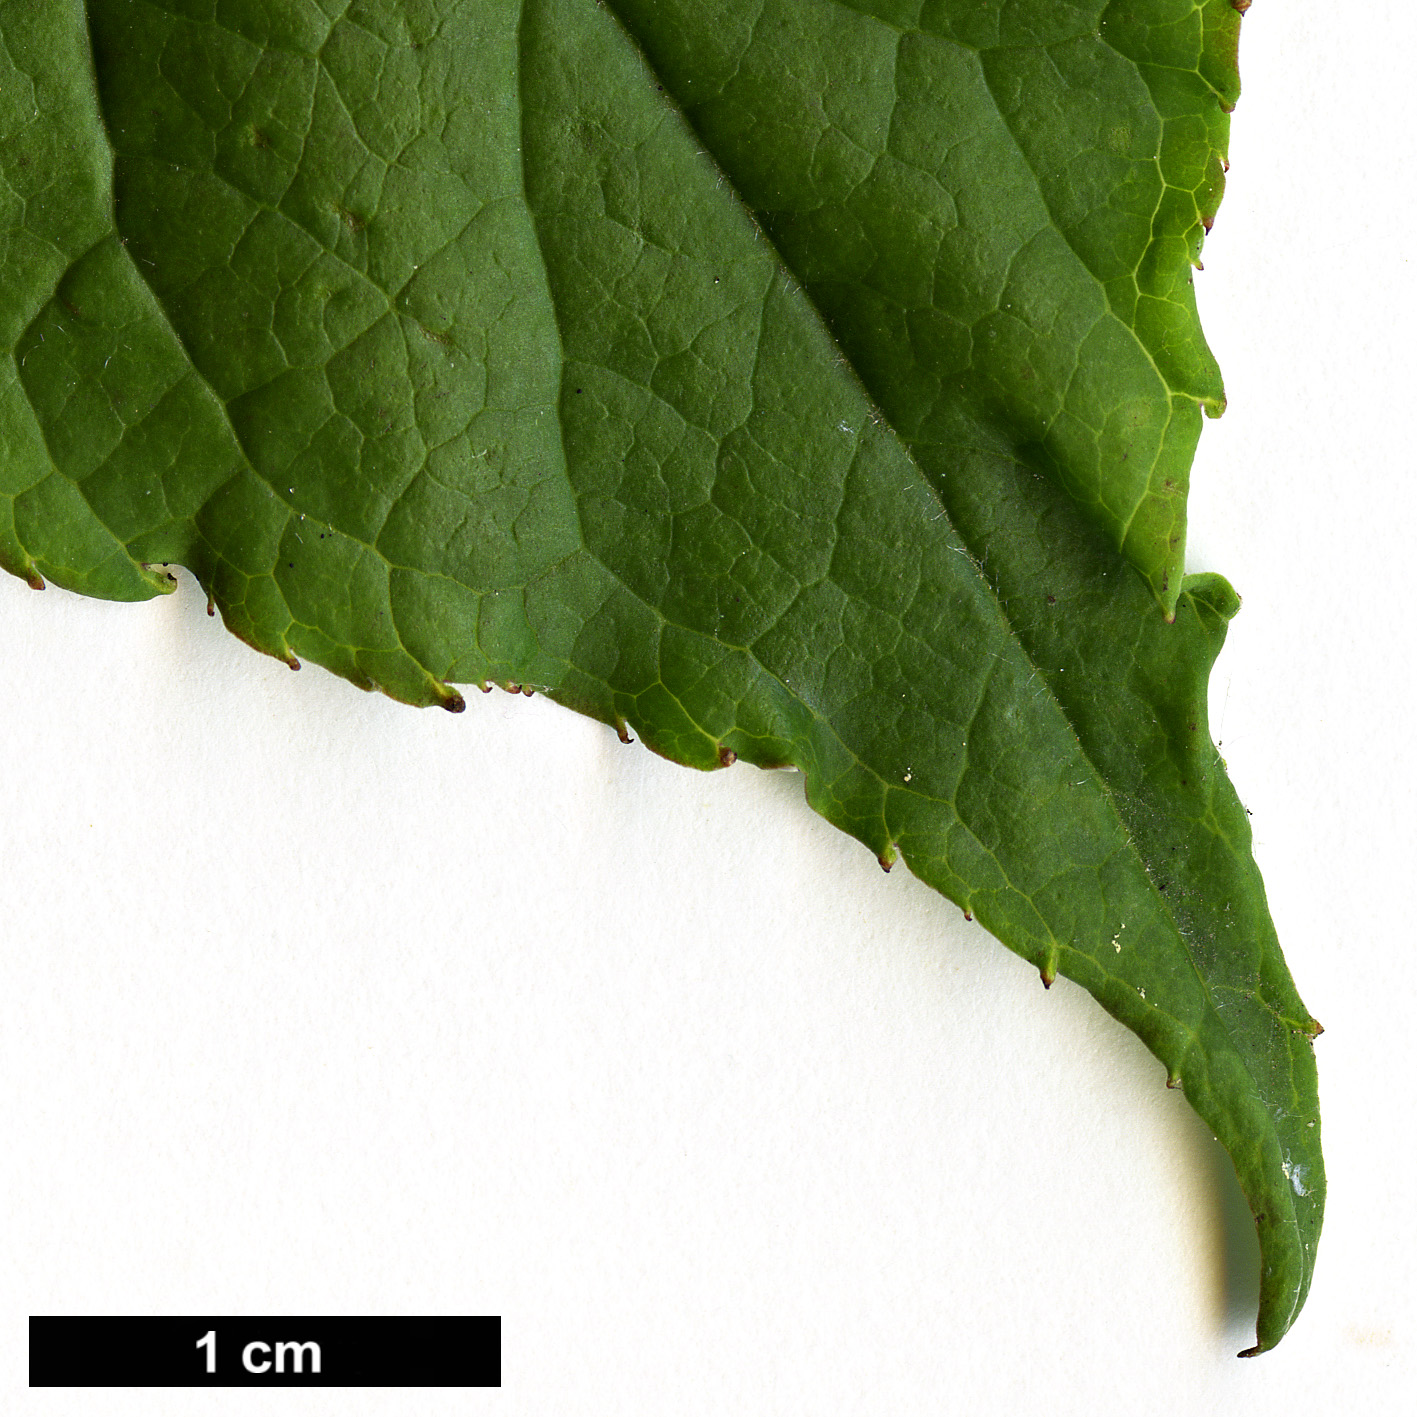 High resolution image: Family: Aquifoliaceae - Genus: Ilex - Taxon: collina